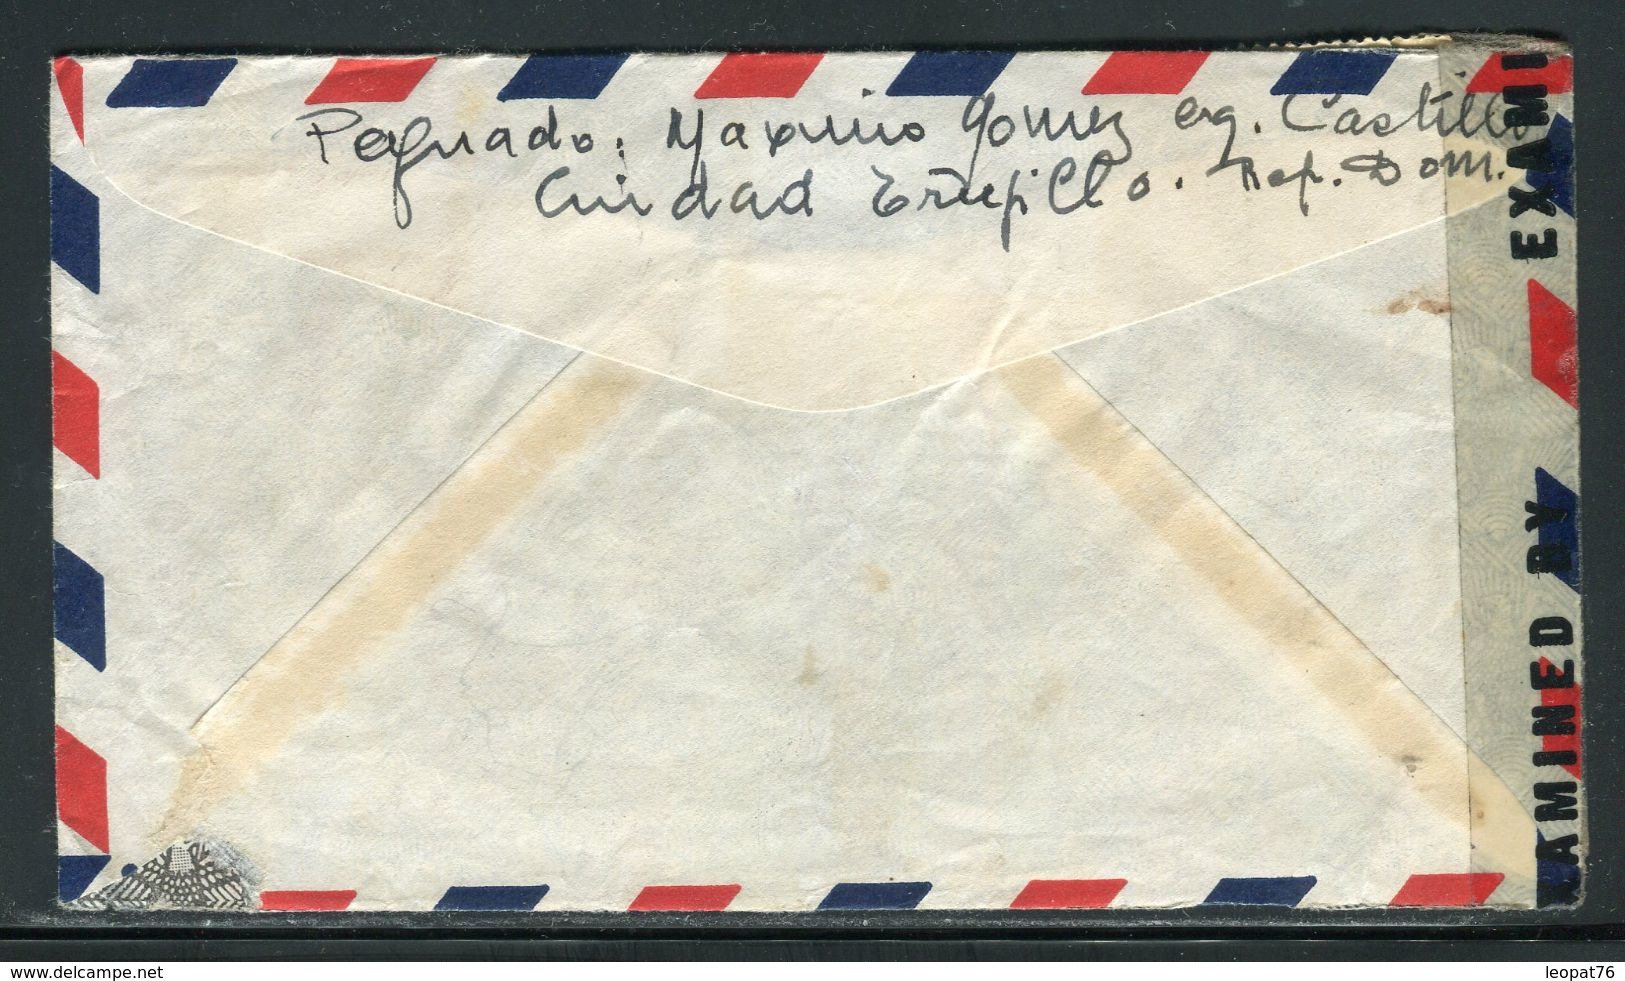 Dominicaine - Enveloppe Pour La France En 1945 Avec Contrôle Postal - Ref D253 - Dominicaanse Republiek